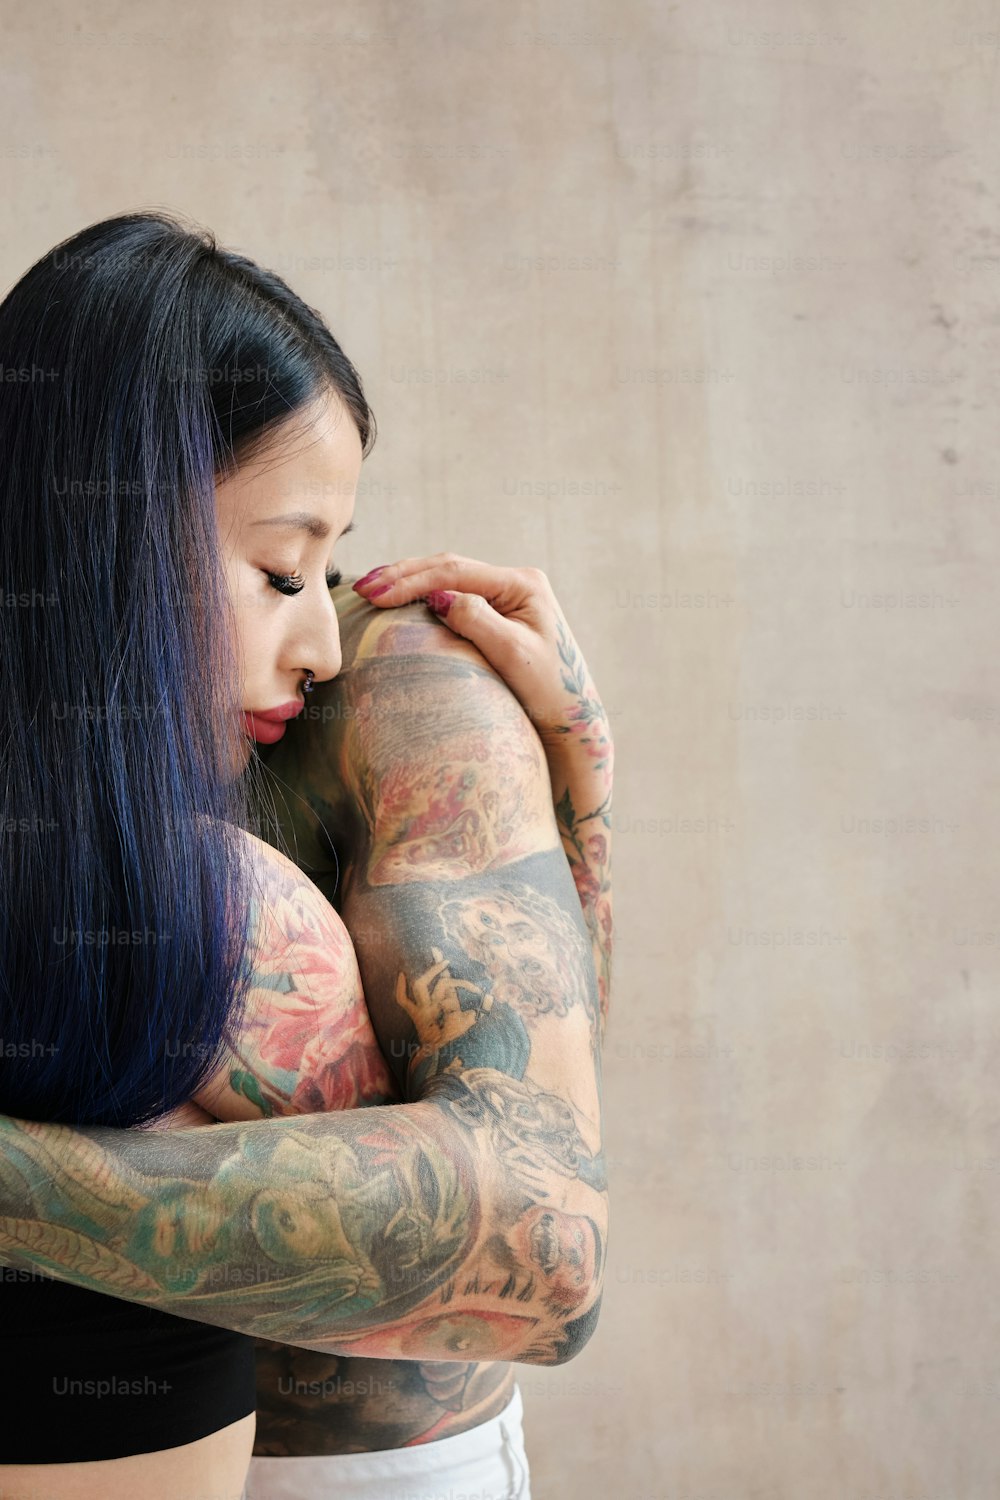 una donna con molti tatuaggi sulle braccia